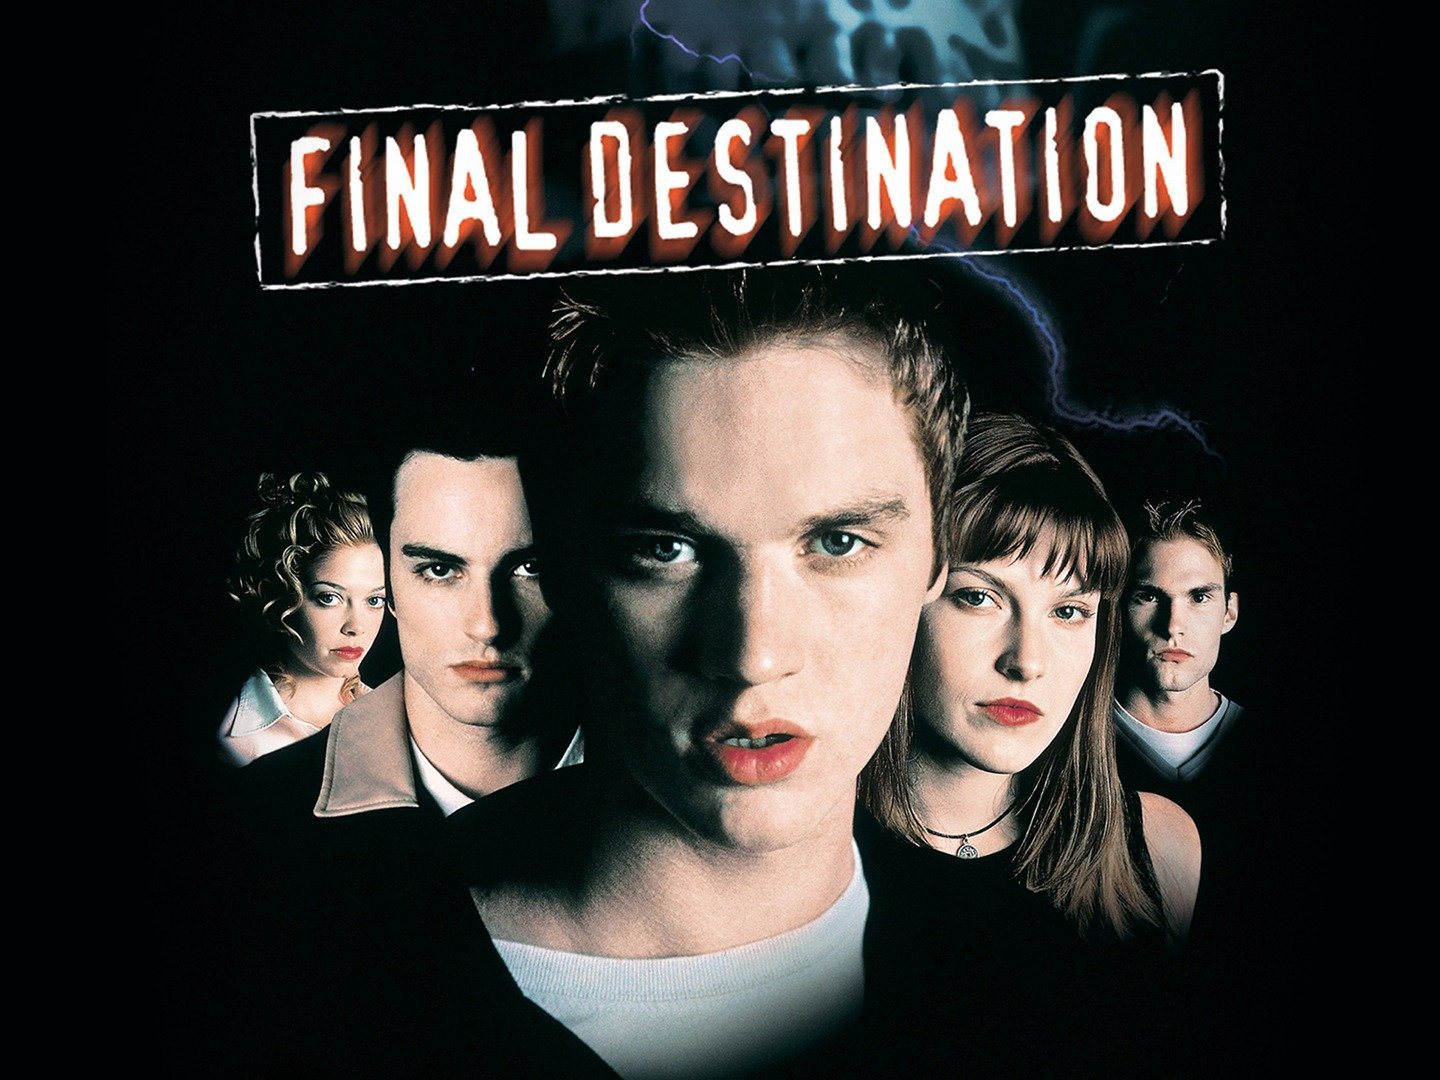 Final Destination / Final Destination (2000)